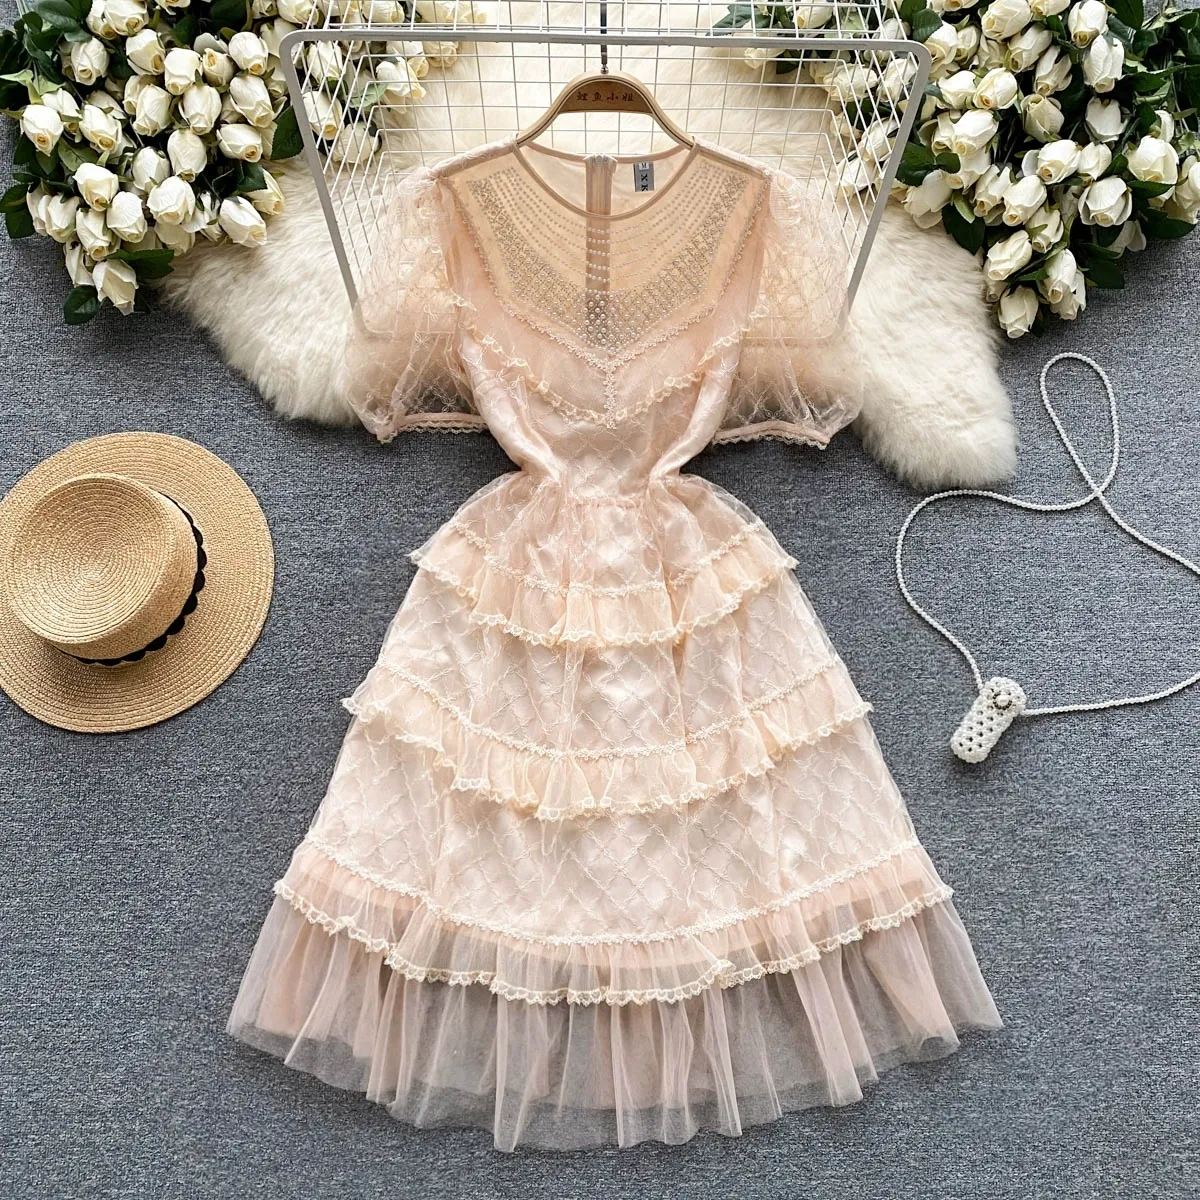 Vestido de malla estilo corte francés con diseño de flores de gancho bordado de verano, vestido de princesa único y de alta gama